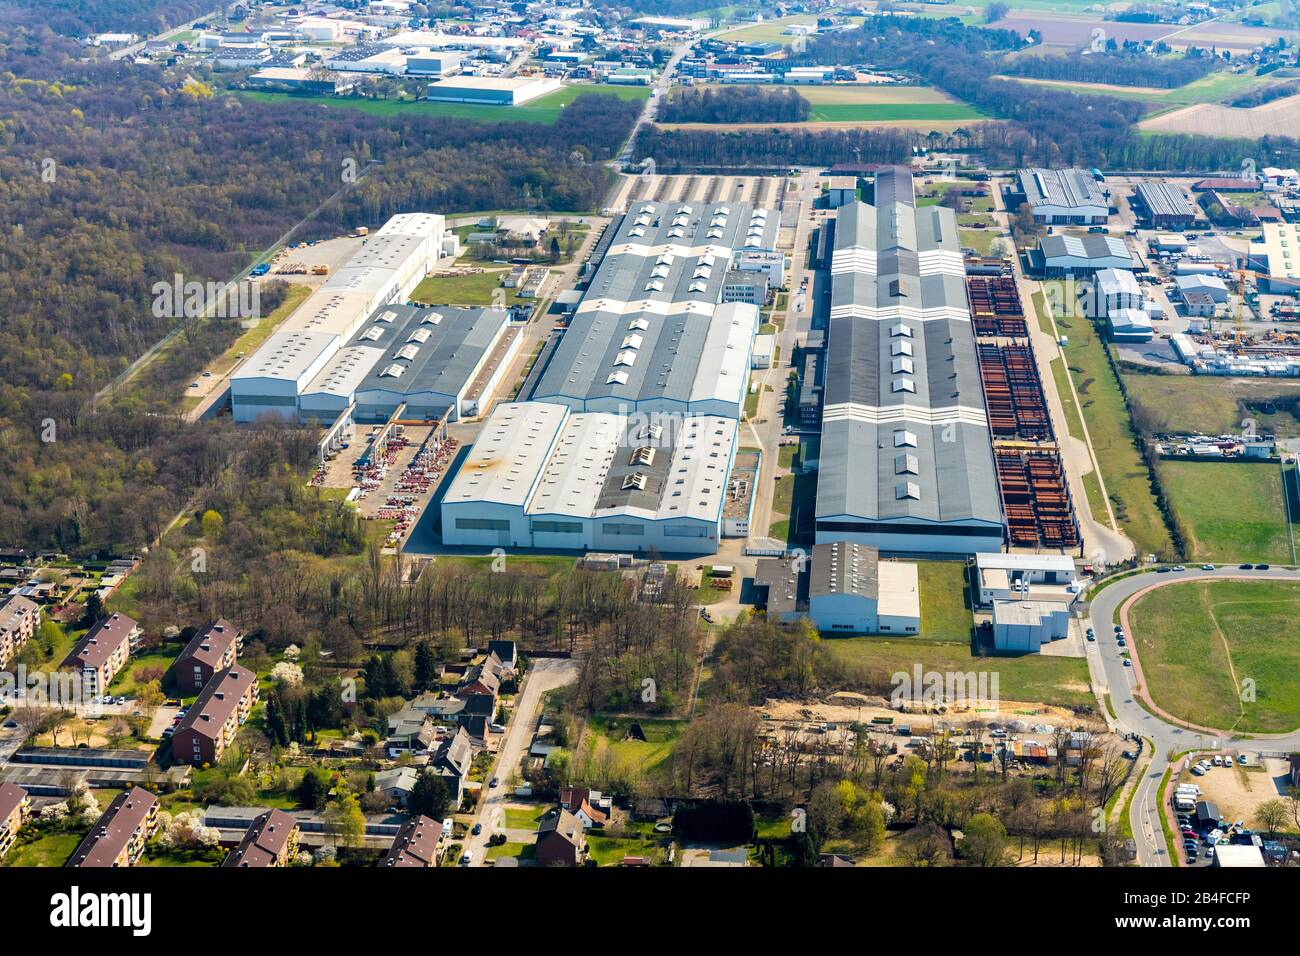 Vue aérienne du constructeur d'éoliennes Winergy à Voerde, Ruhrgebiet, Rhénanie-du-Nord-Westphalie, Allemagne. Le plus grand fabricant mondial de transmissions pour turbines éoliennes et fait partie du groupe Siemens. Banque D'Images